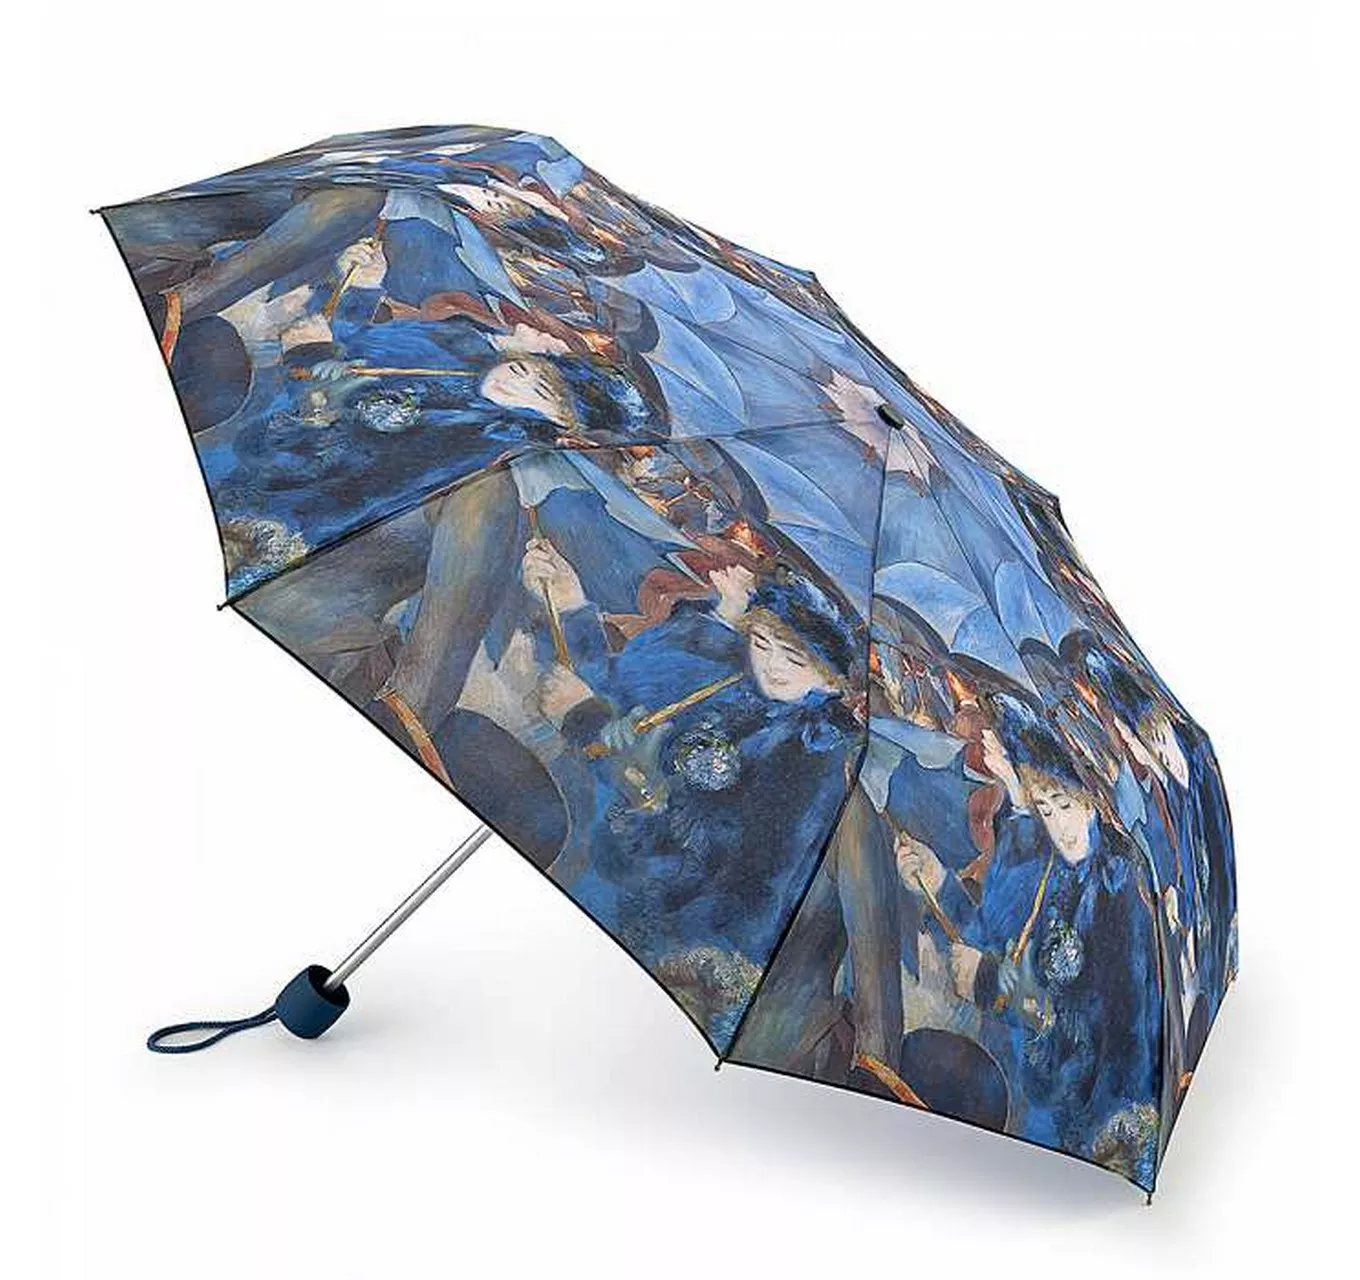 NG Minilite-2 The Umbrellas